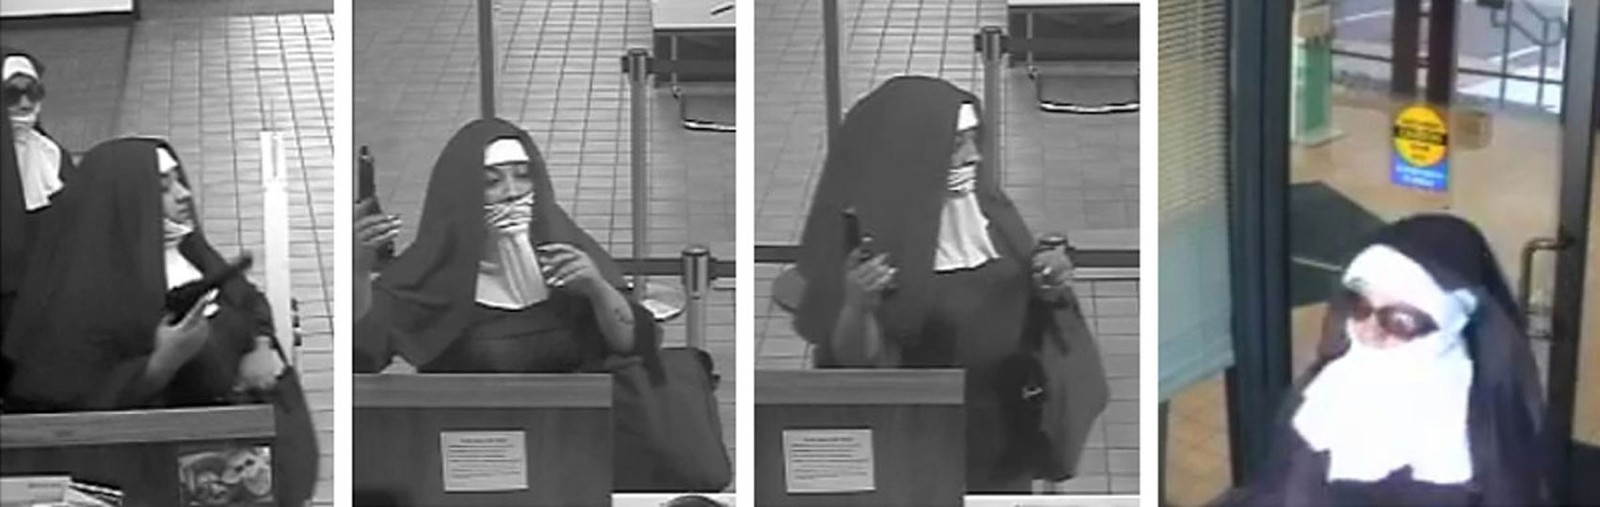 Mulheres disfarçadas de freiras tentam roubar banco nos EUA